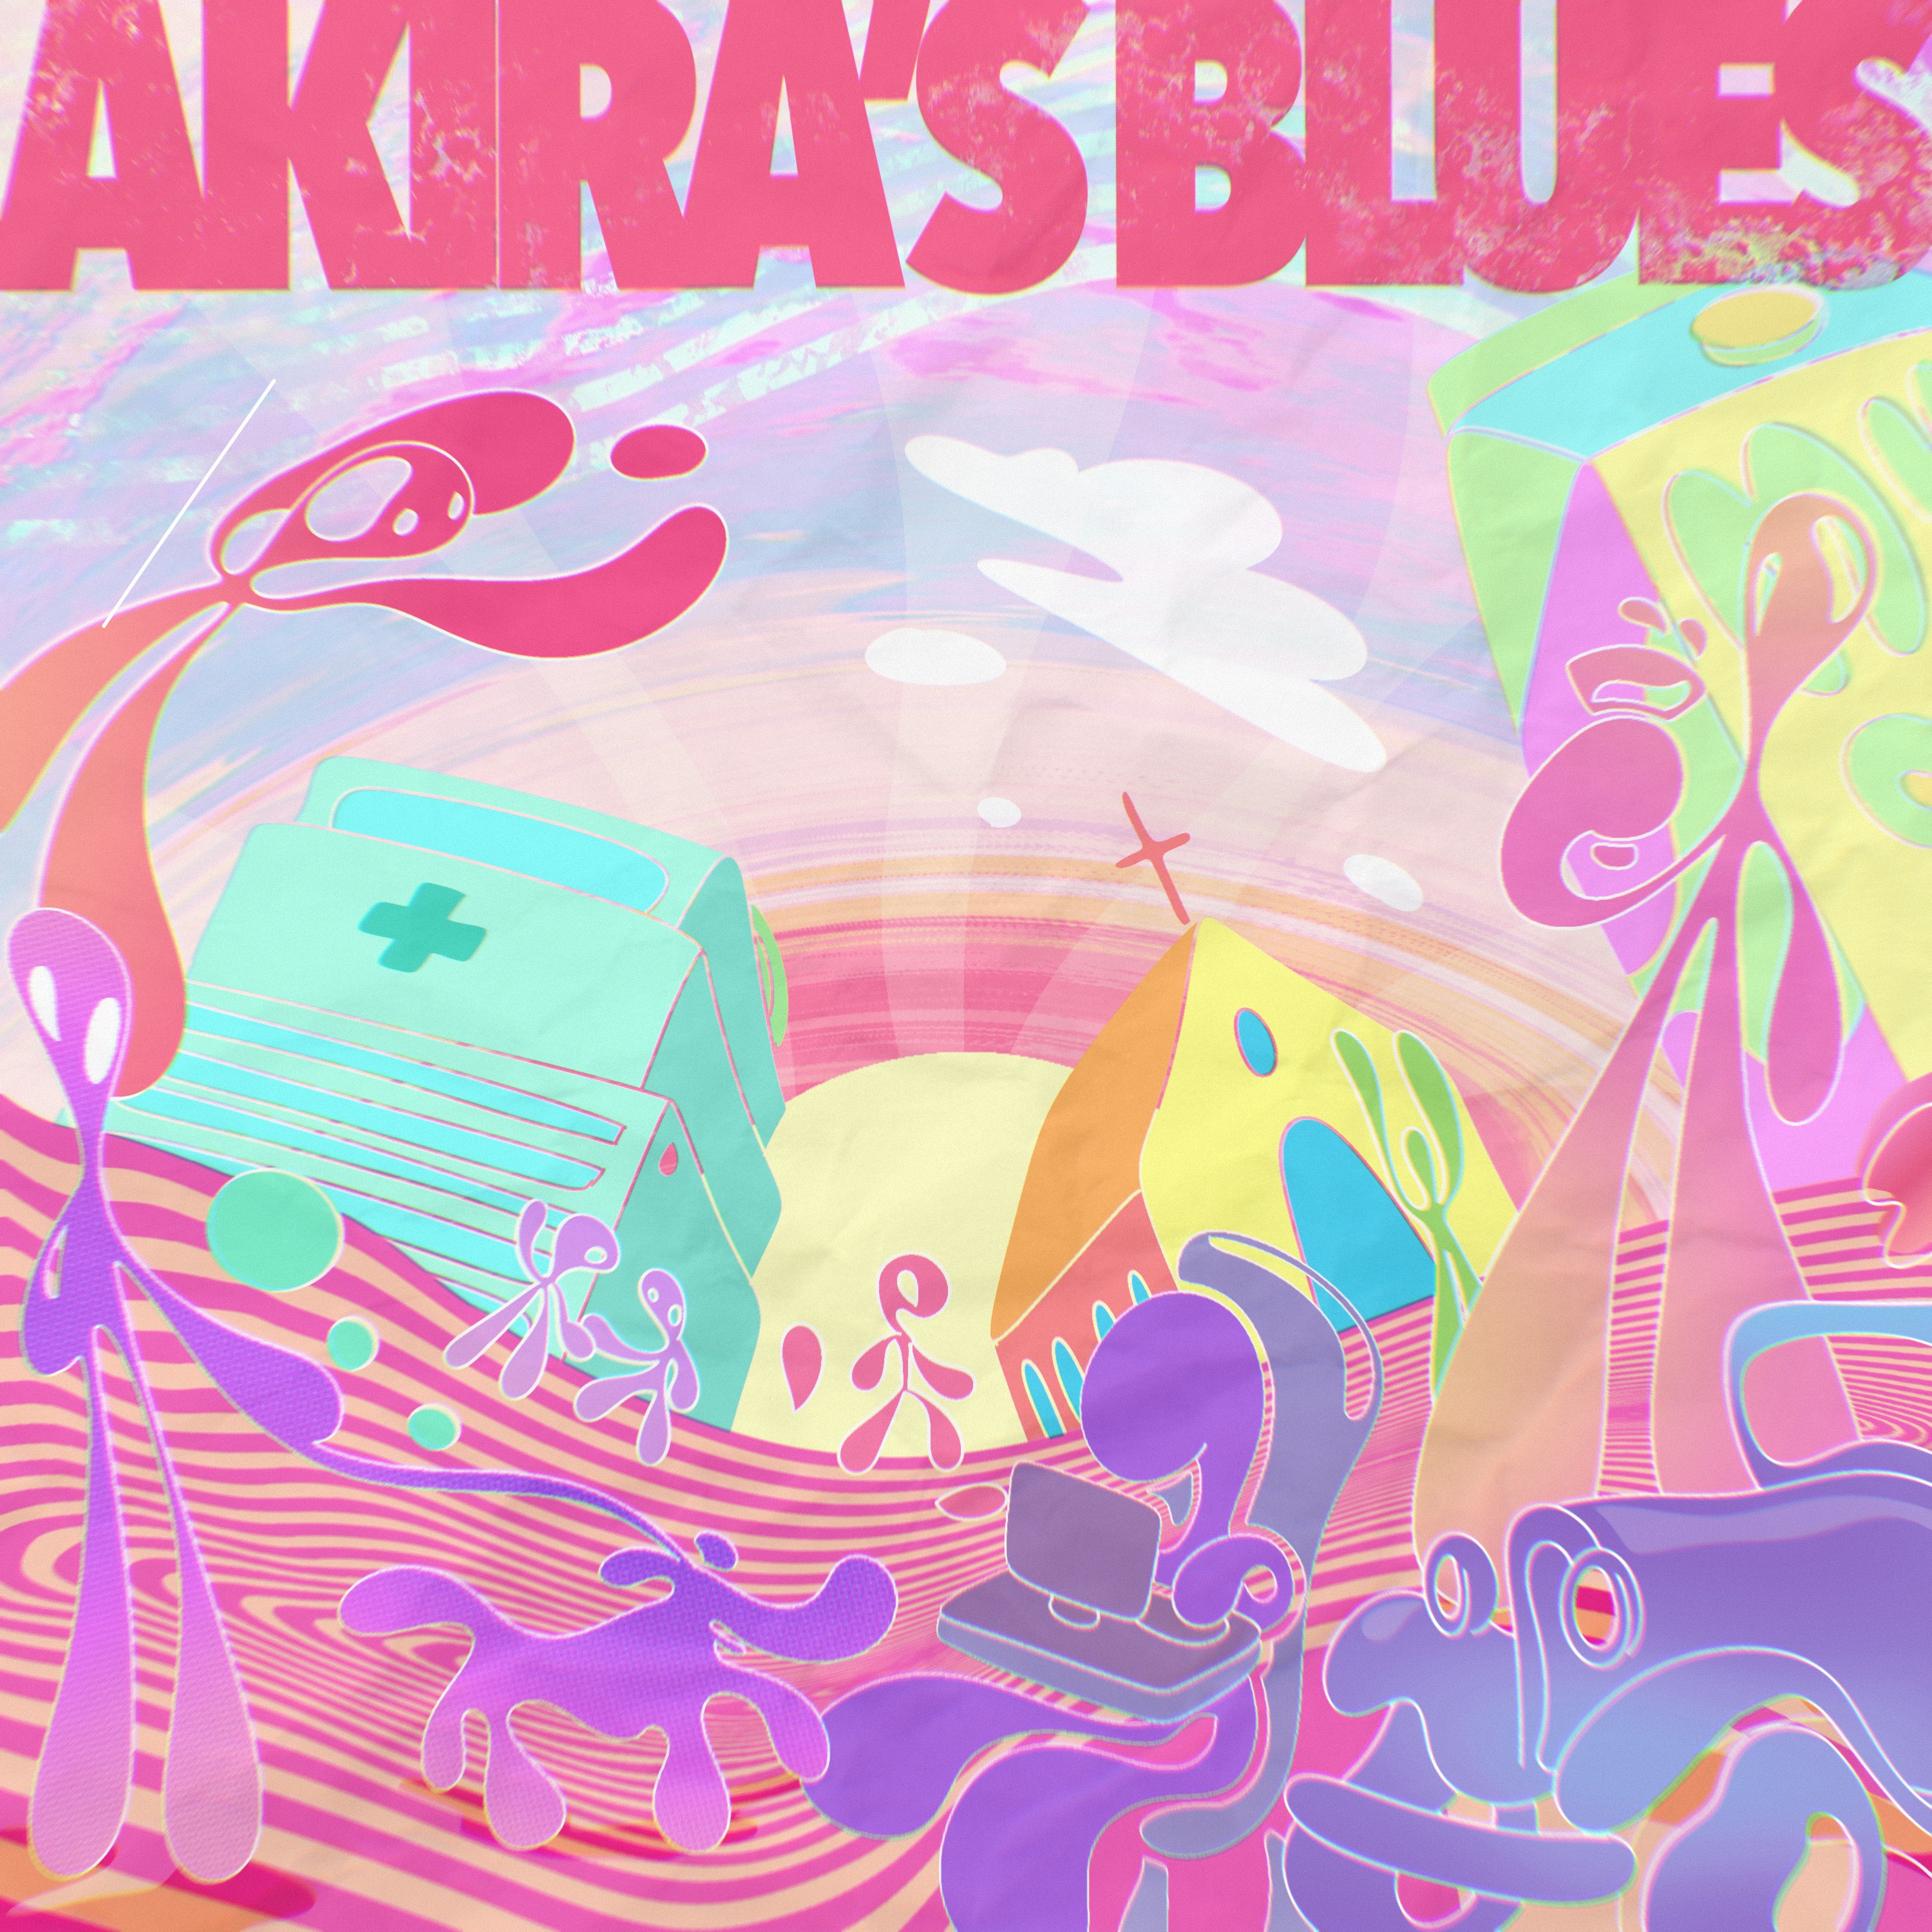 Trevour Amunga – Akira’s Blues